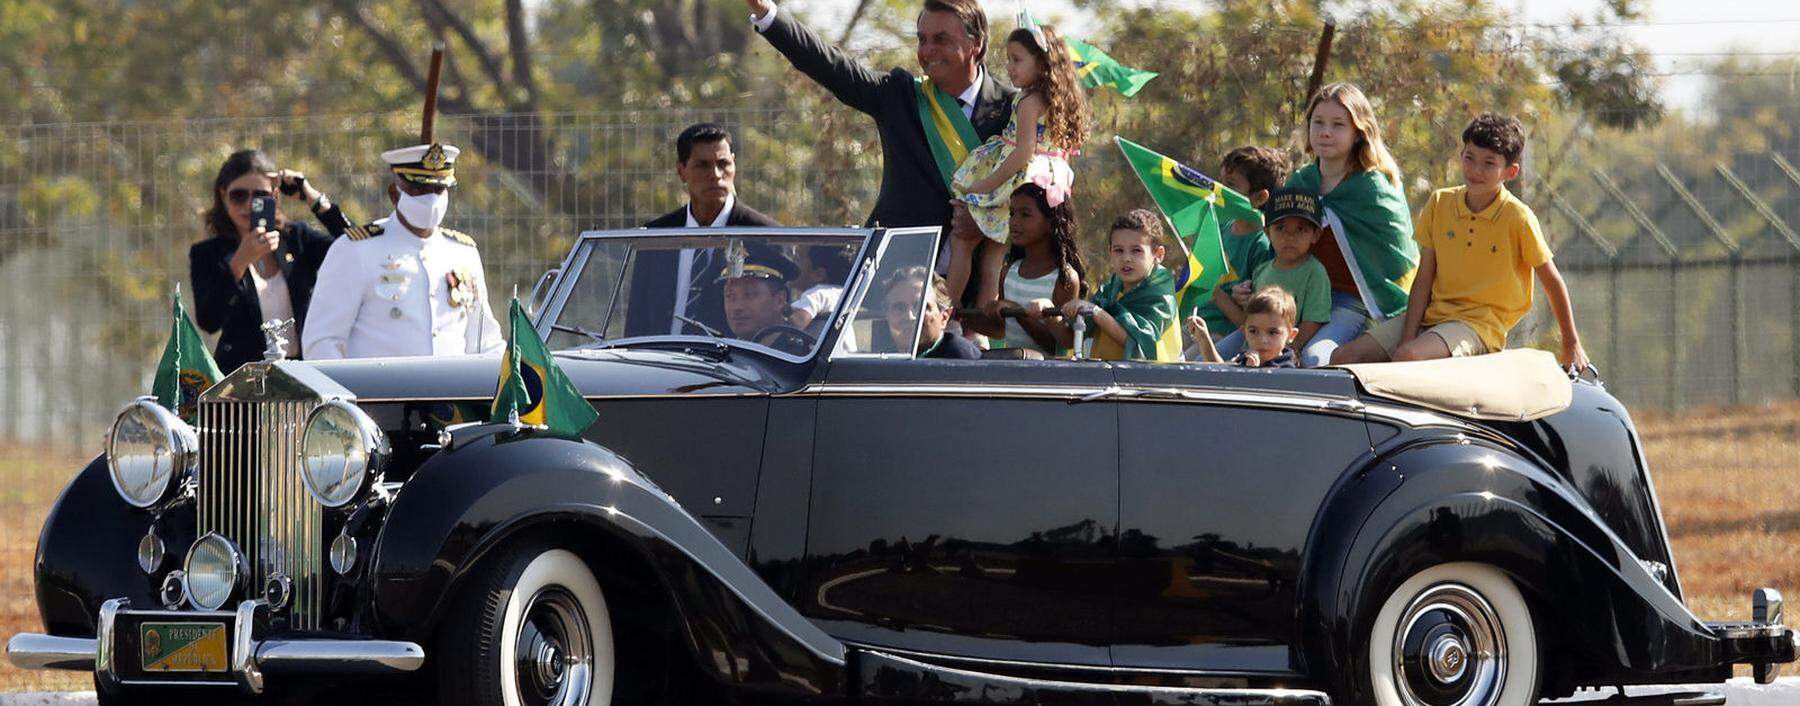 Der brasilianische Populist Jair Bolsonaro hofft, dass ihm – anders als seinem Vorbild Donald Trump –  die Wiederwahl glückt.